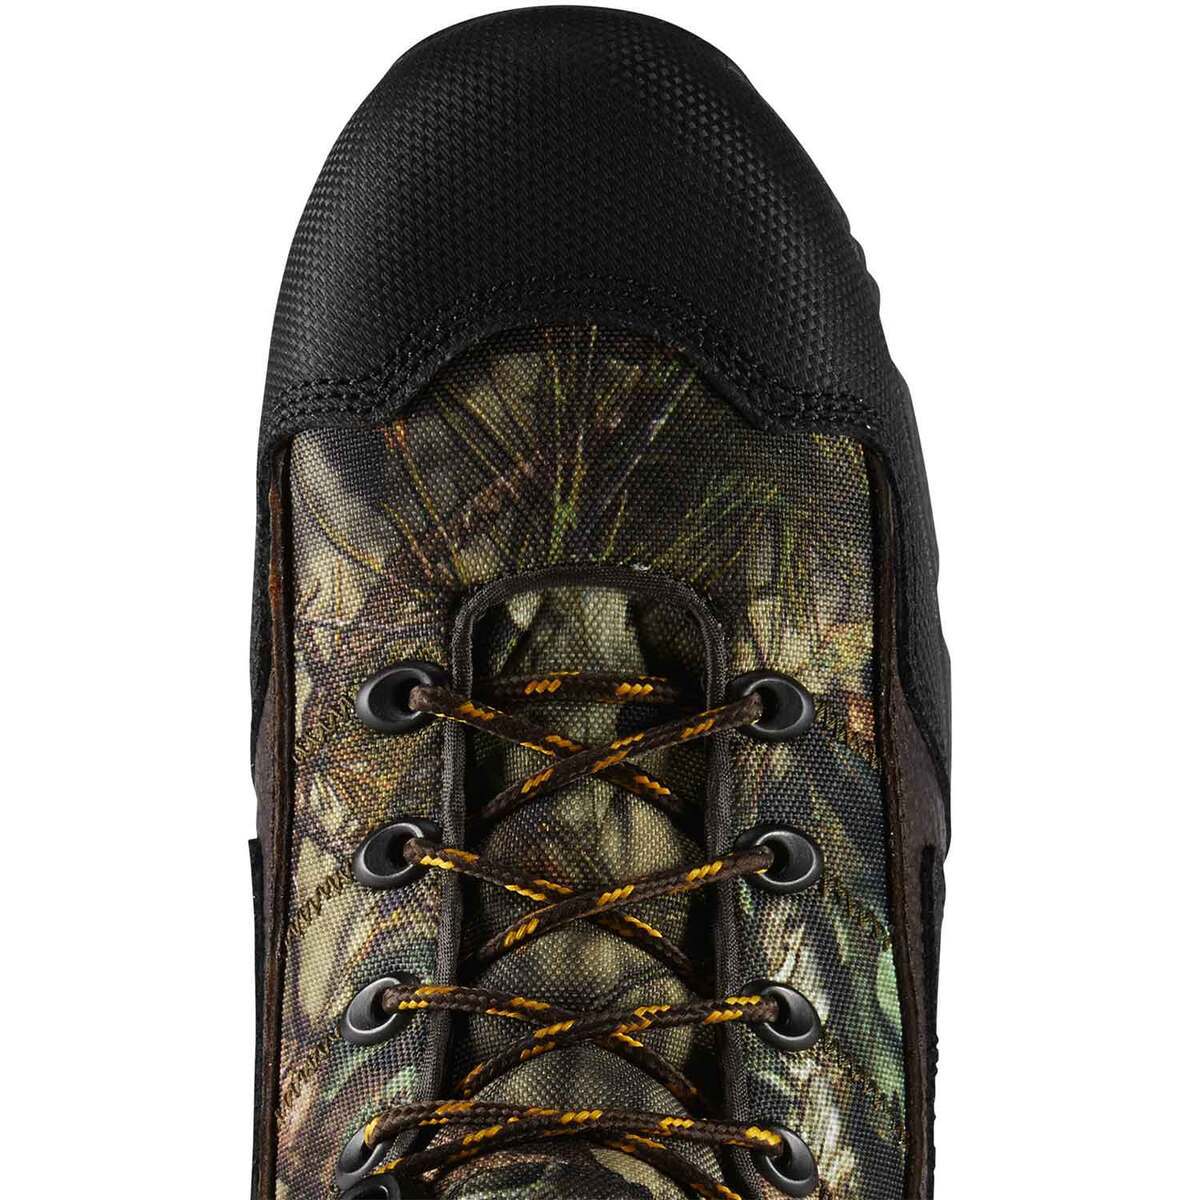 LaCrosse Footwear Men's 2000G Thinsulate Waterproof Hunting Boots ...